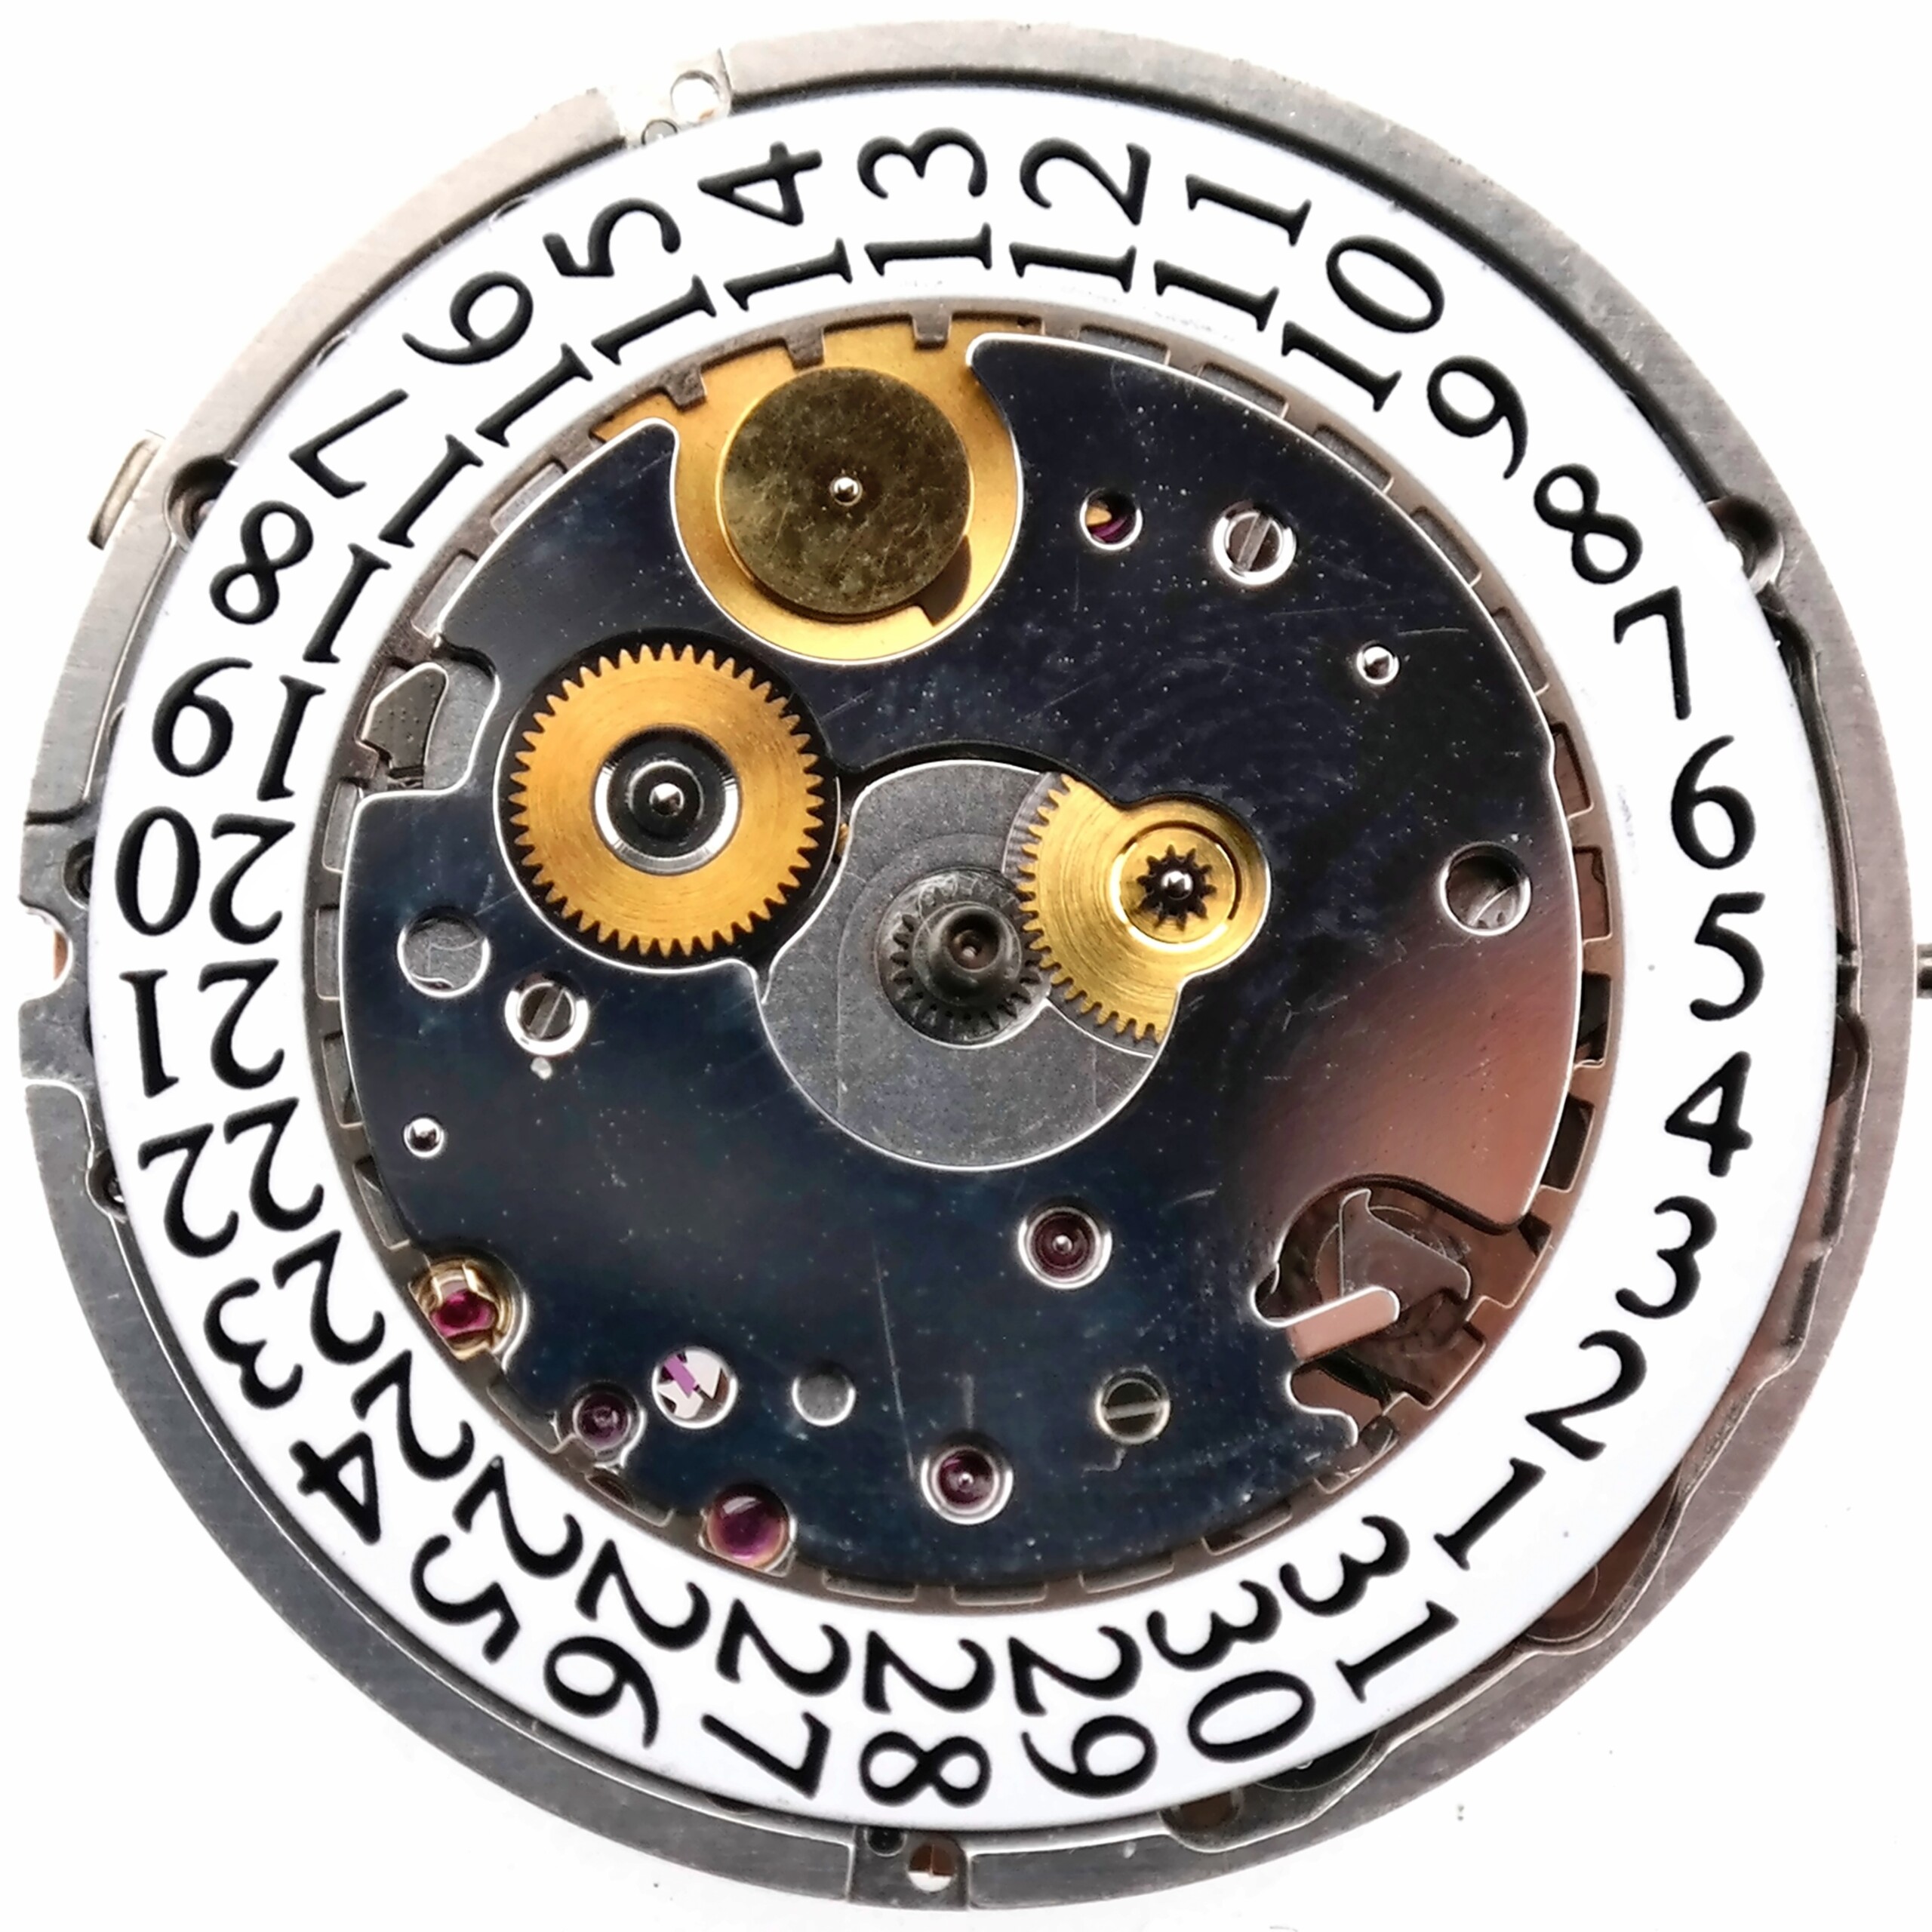 chopard imperiale automatic chronometer movement salmon leather bridges